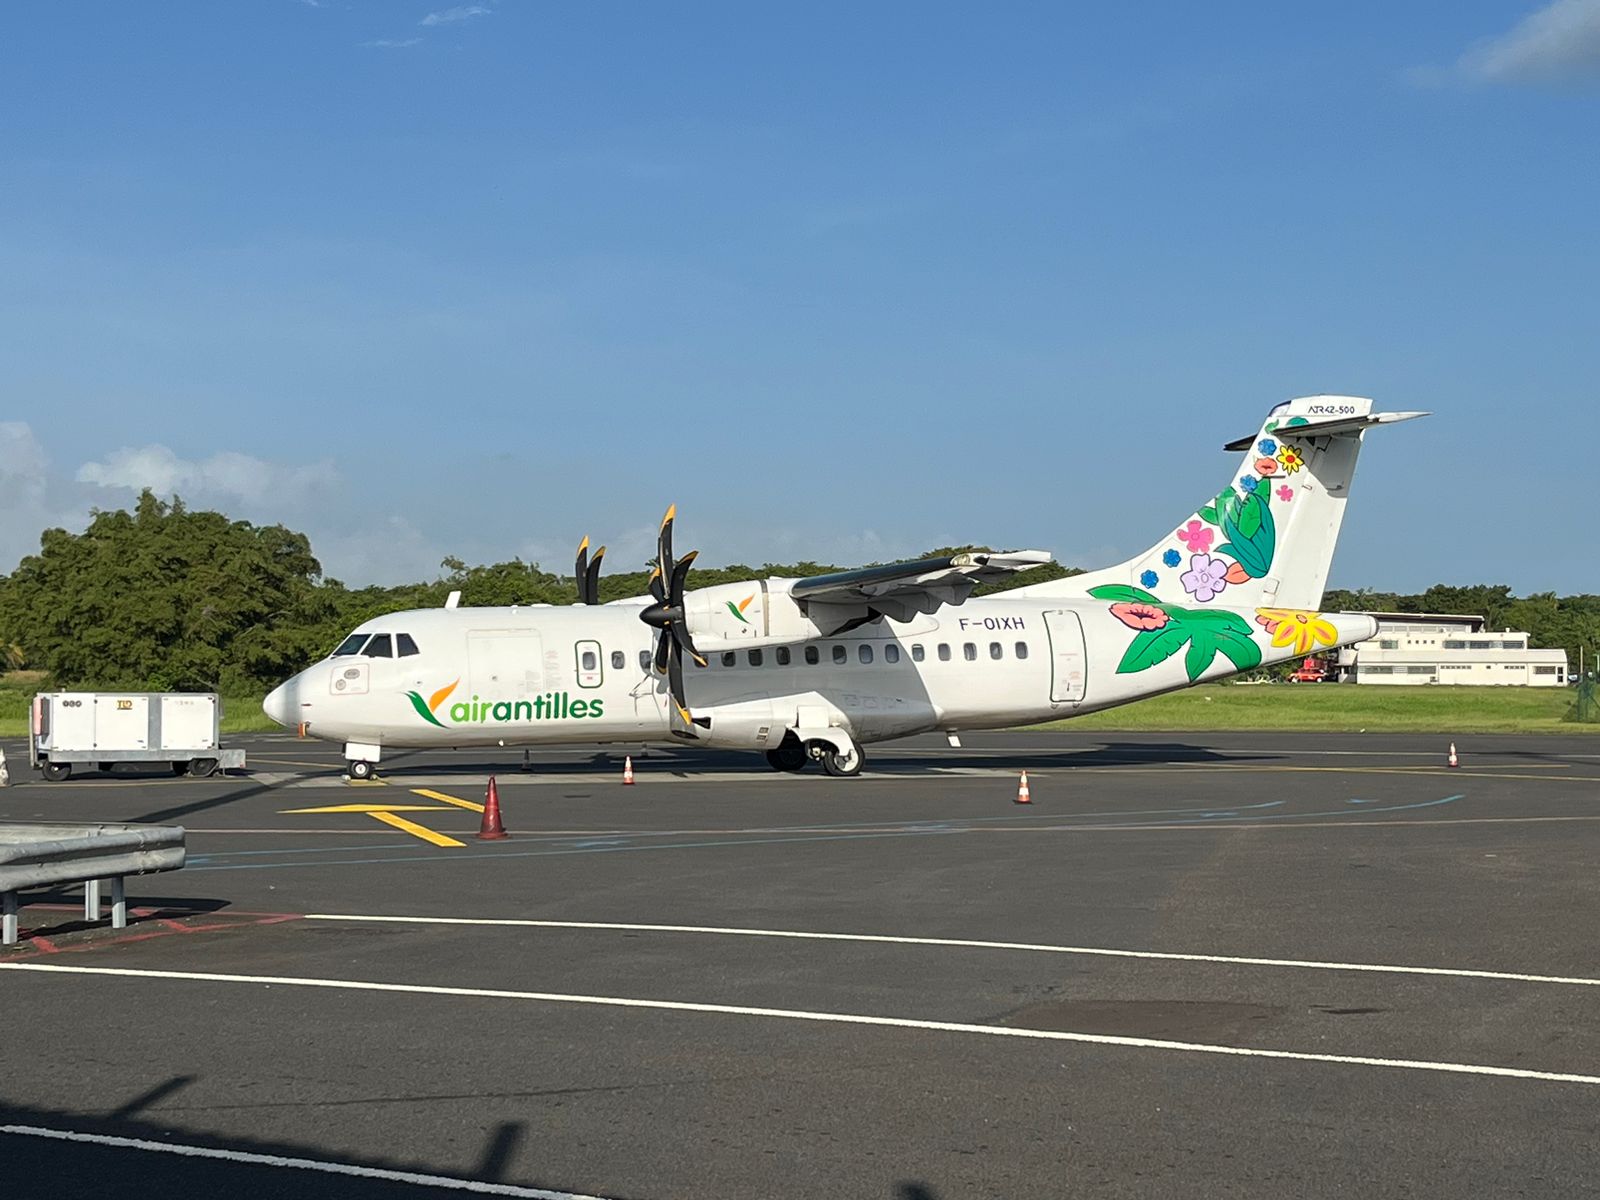     La Collectivité de Saint-Martin se positionne pour la reprise partielle d'Air Antilles

